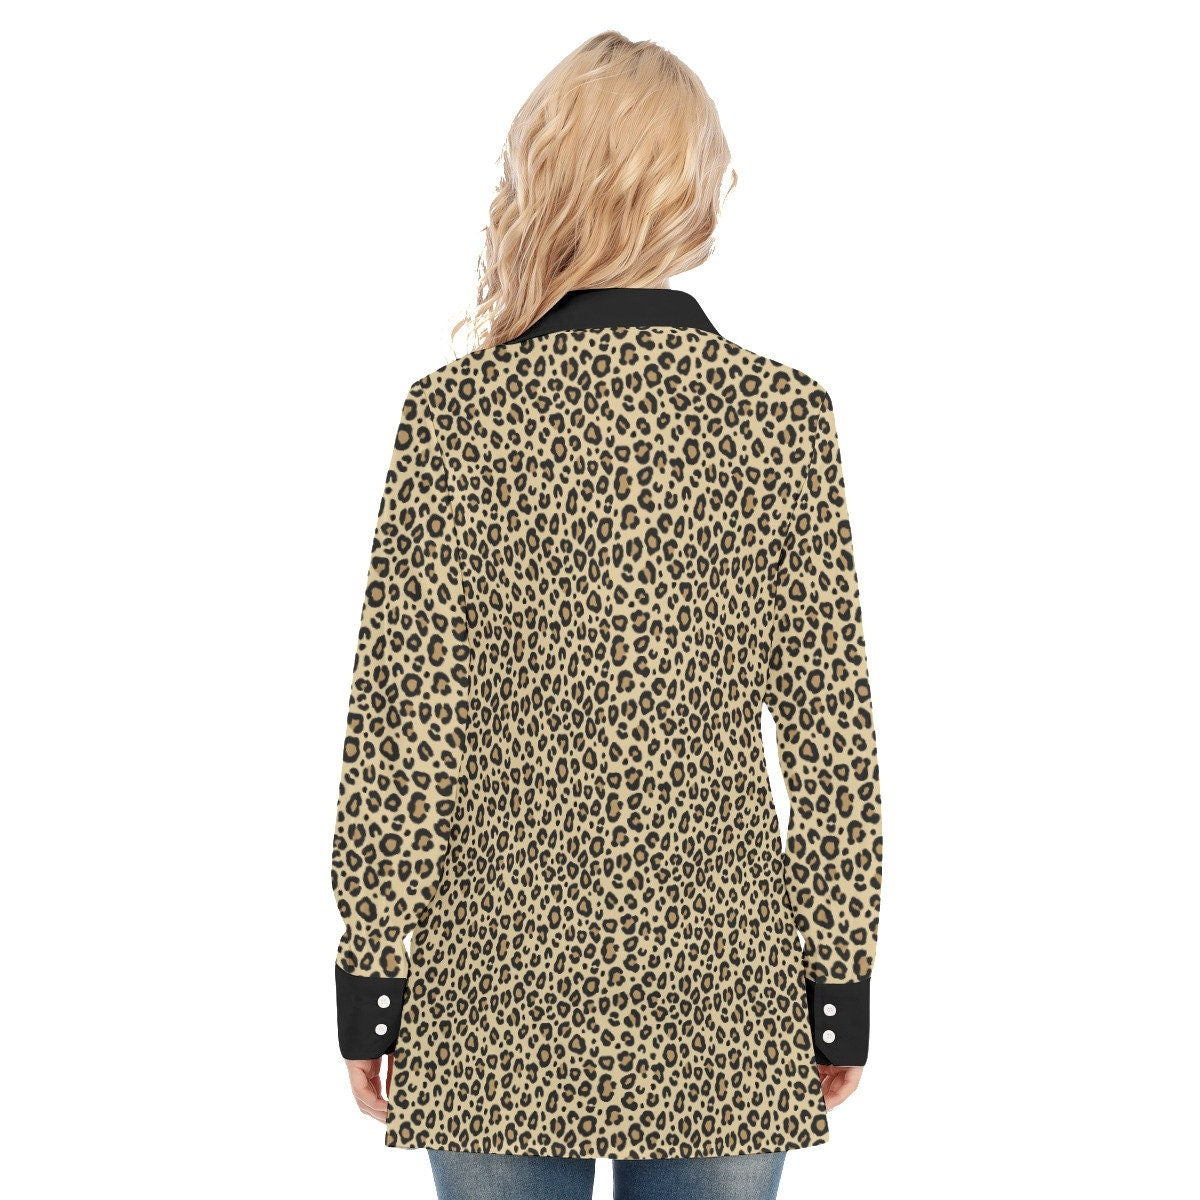 Chemise léopard, chemise imprimé léopard faite à la main, chemise sexy, chemise imprimé animal, chemisier femme, haut femme, chemise à manches longues femmes, haute couture